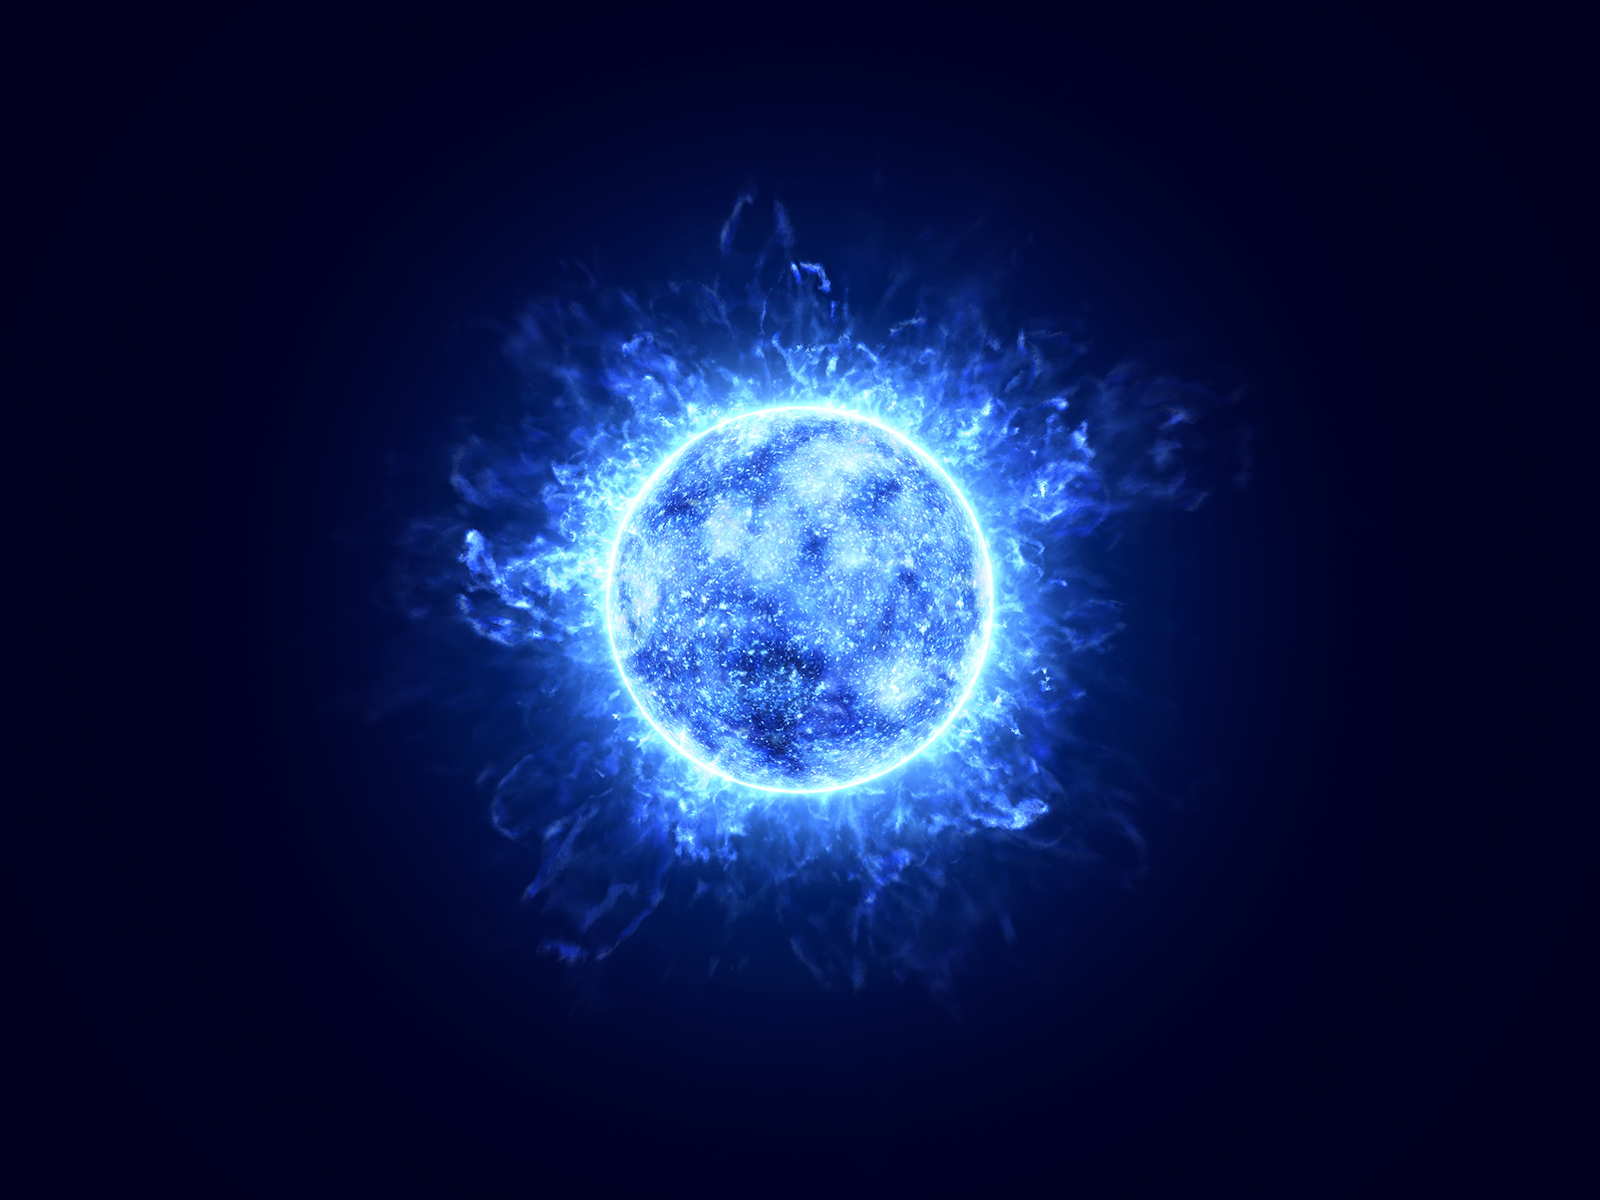 Blue ball of hydrogen